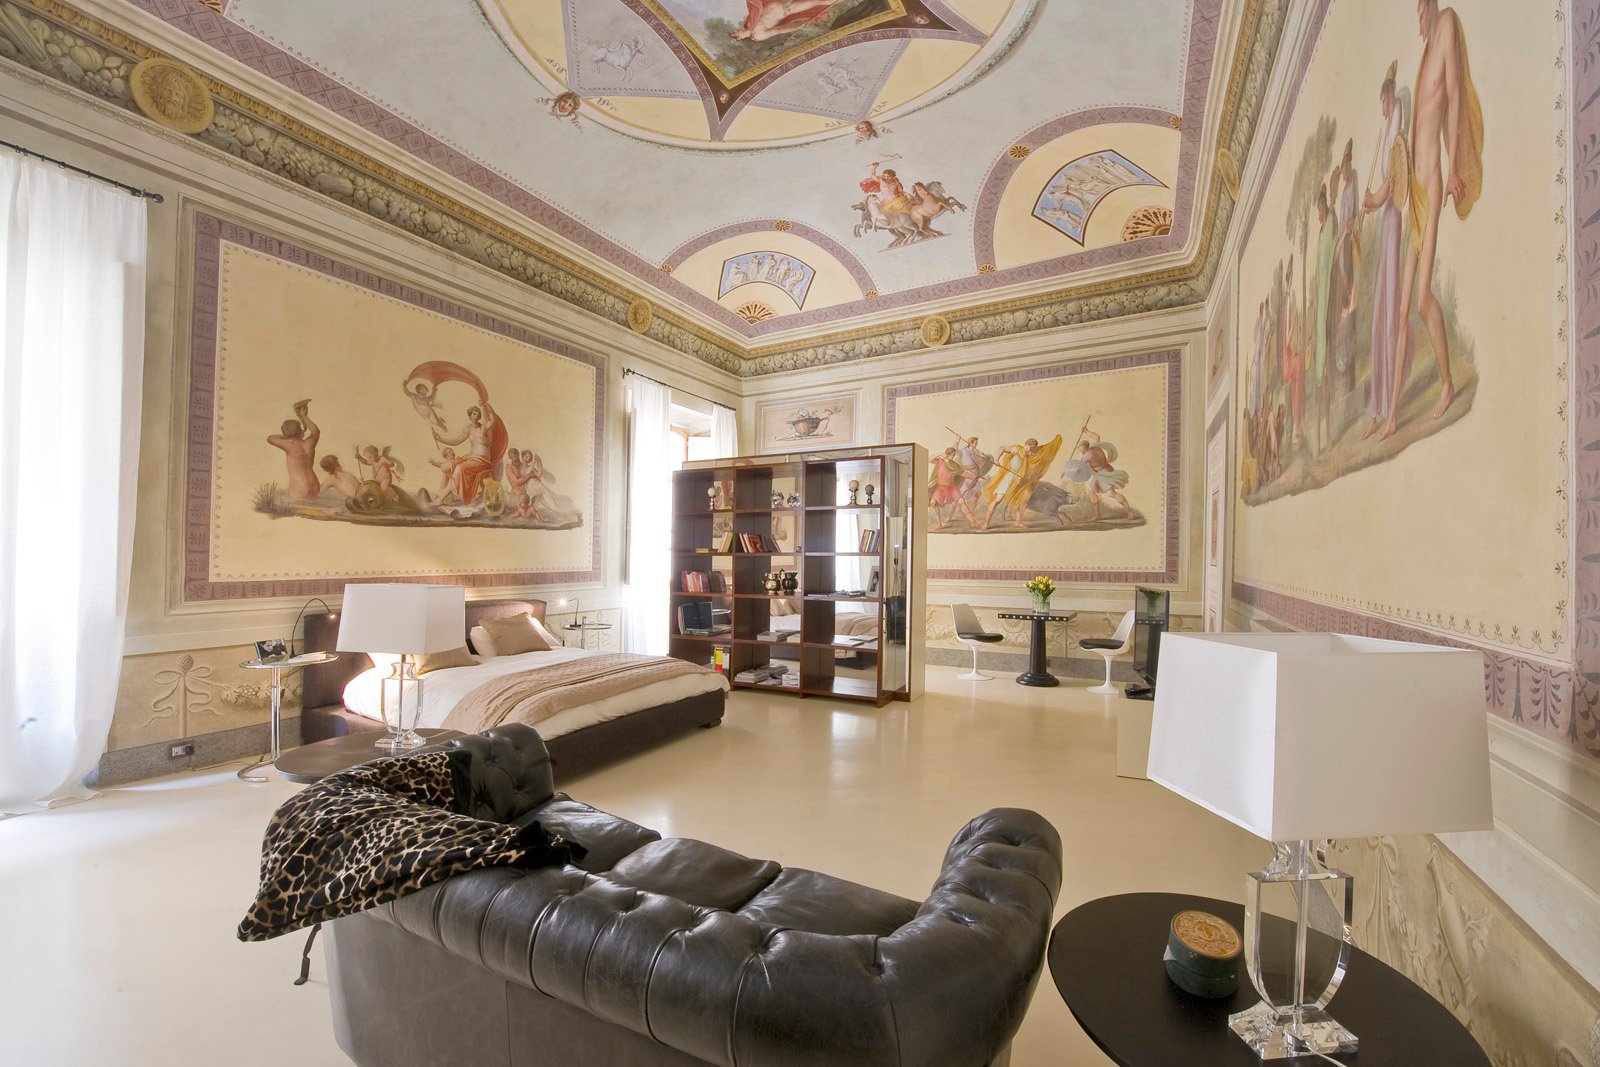 Apartment for sale <br>Santa Croce